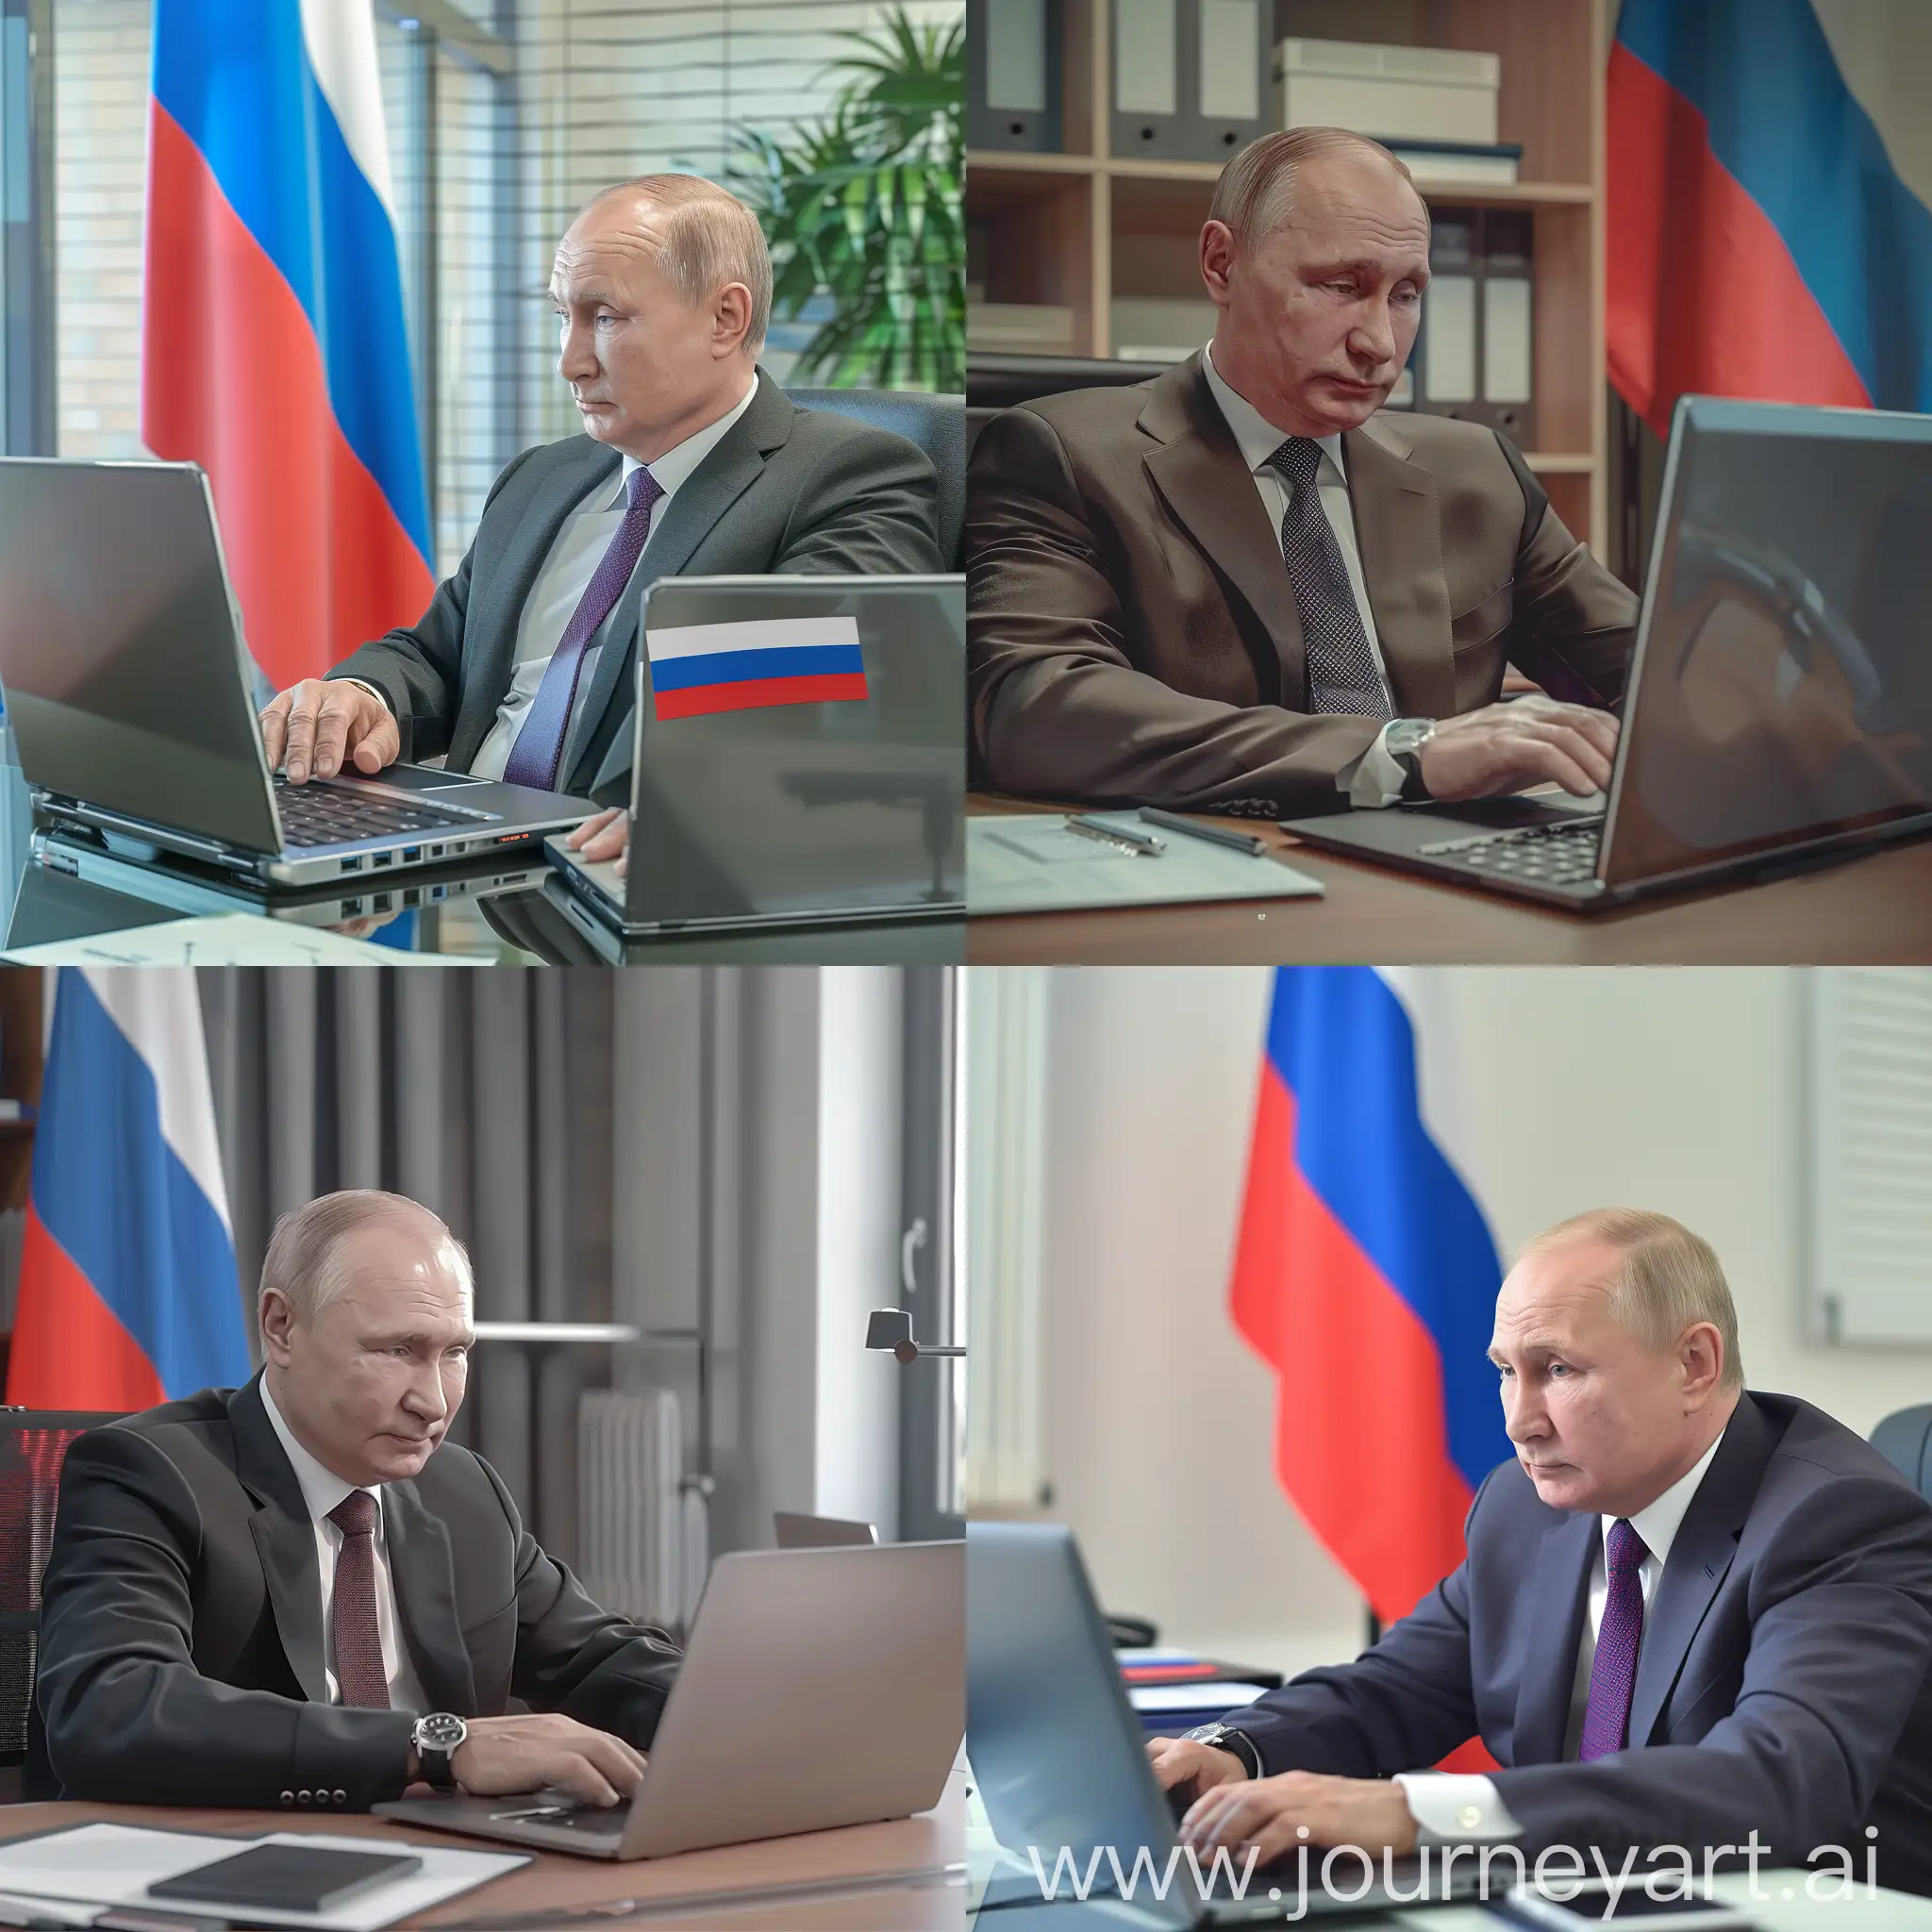 Владимир Путин, работает за ноутбуком, задний фон кабинет, флаг России, HDR, супер детализация, гипер реализм, острый фокус, профессиональное освещение